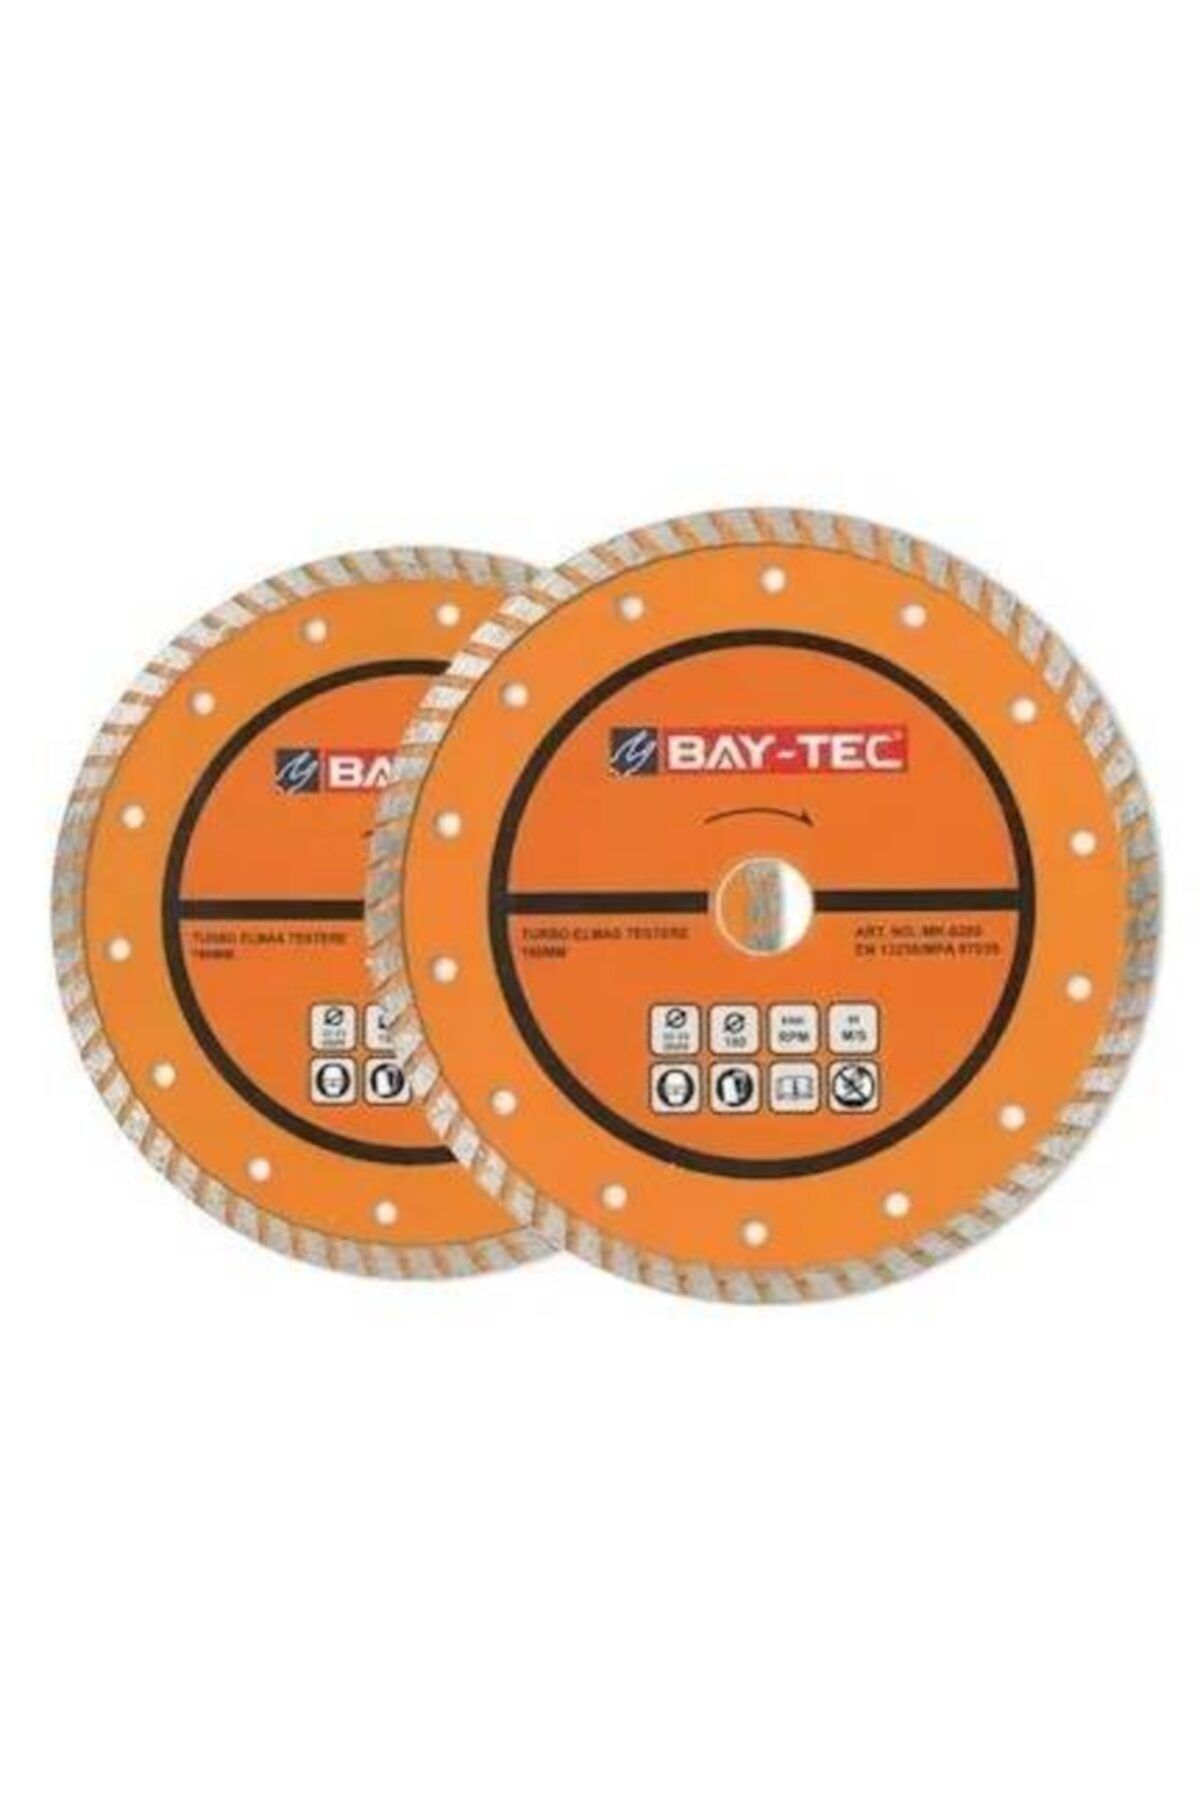 Baytec Bay-tec Turbo Elmas Testere 180x22-23mm